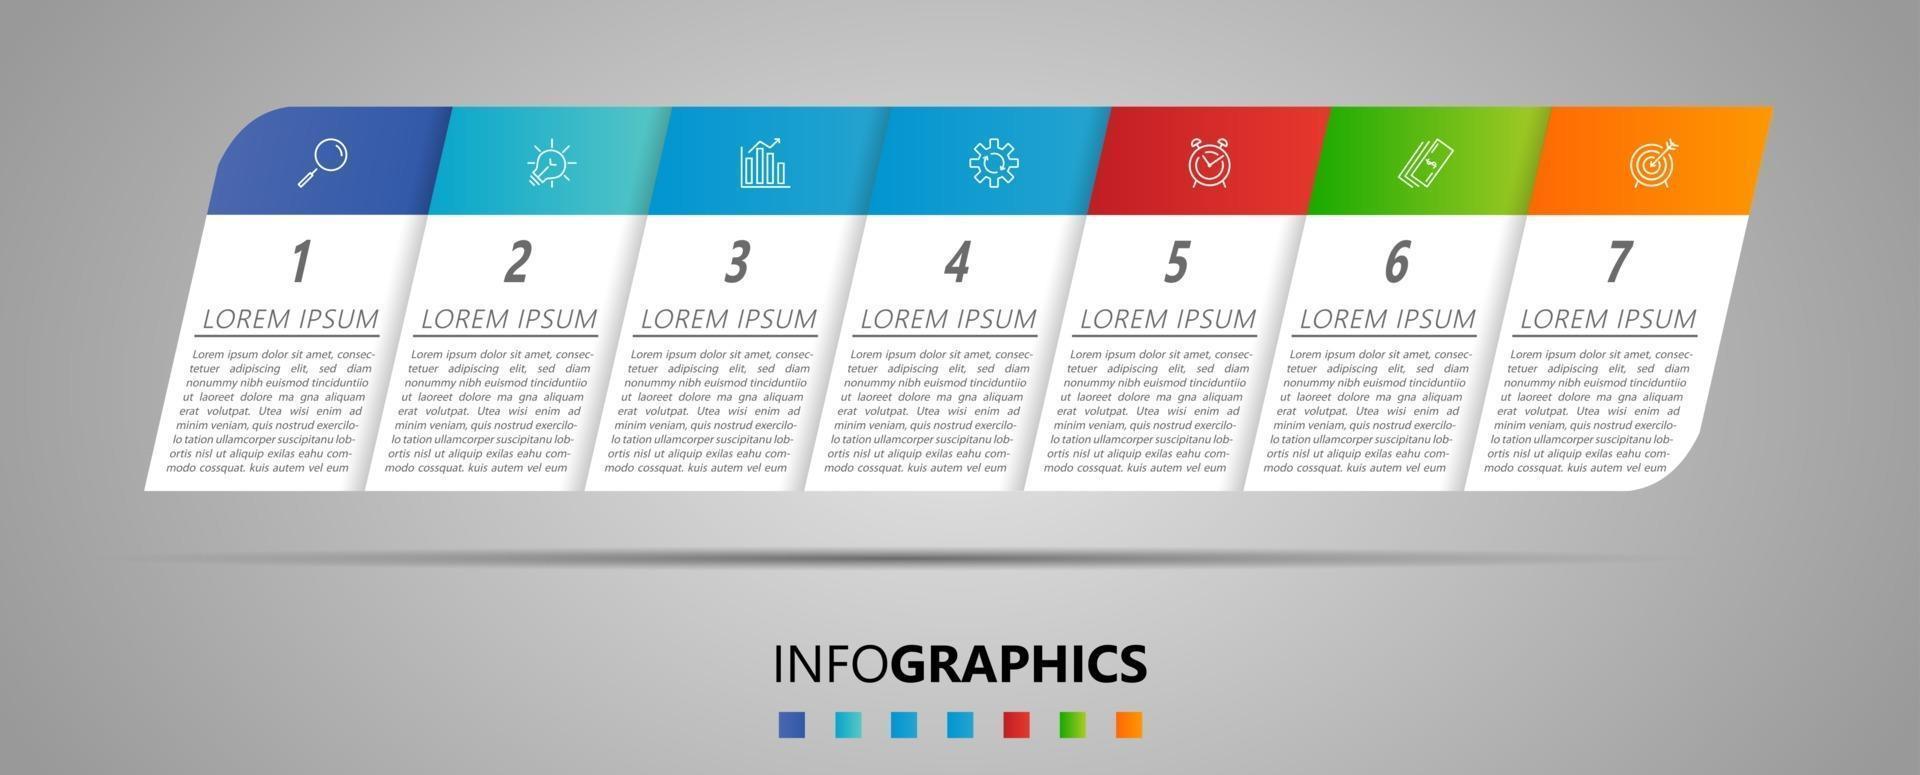 vecteur de modèle de conception infographique avec des icônes et 7 options ou étapes